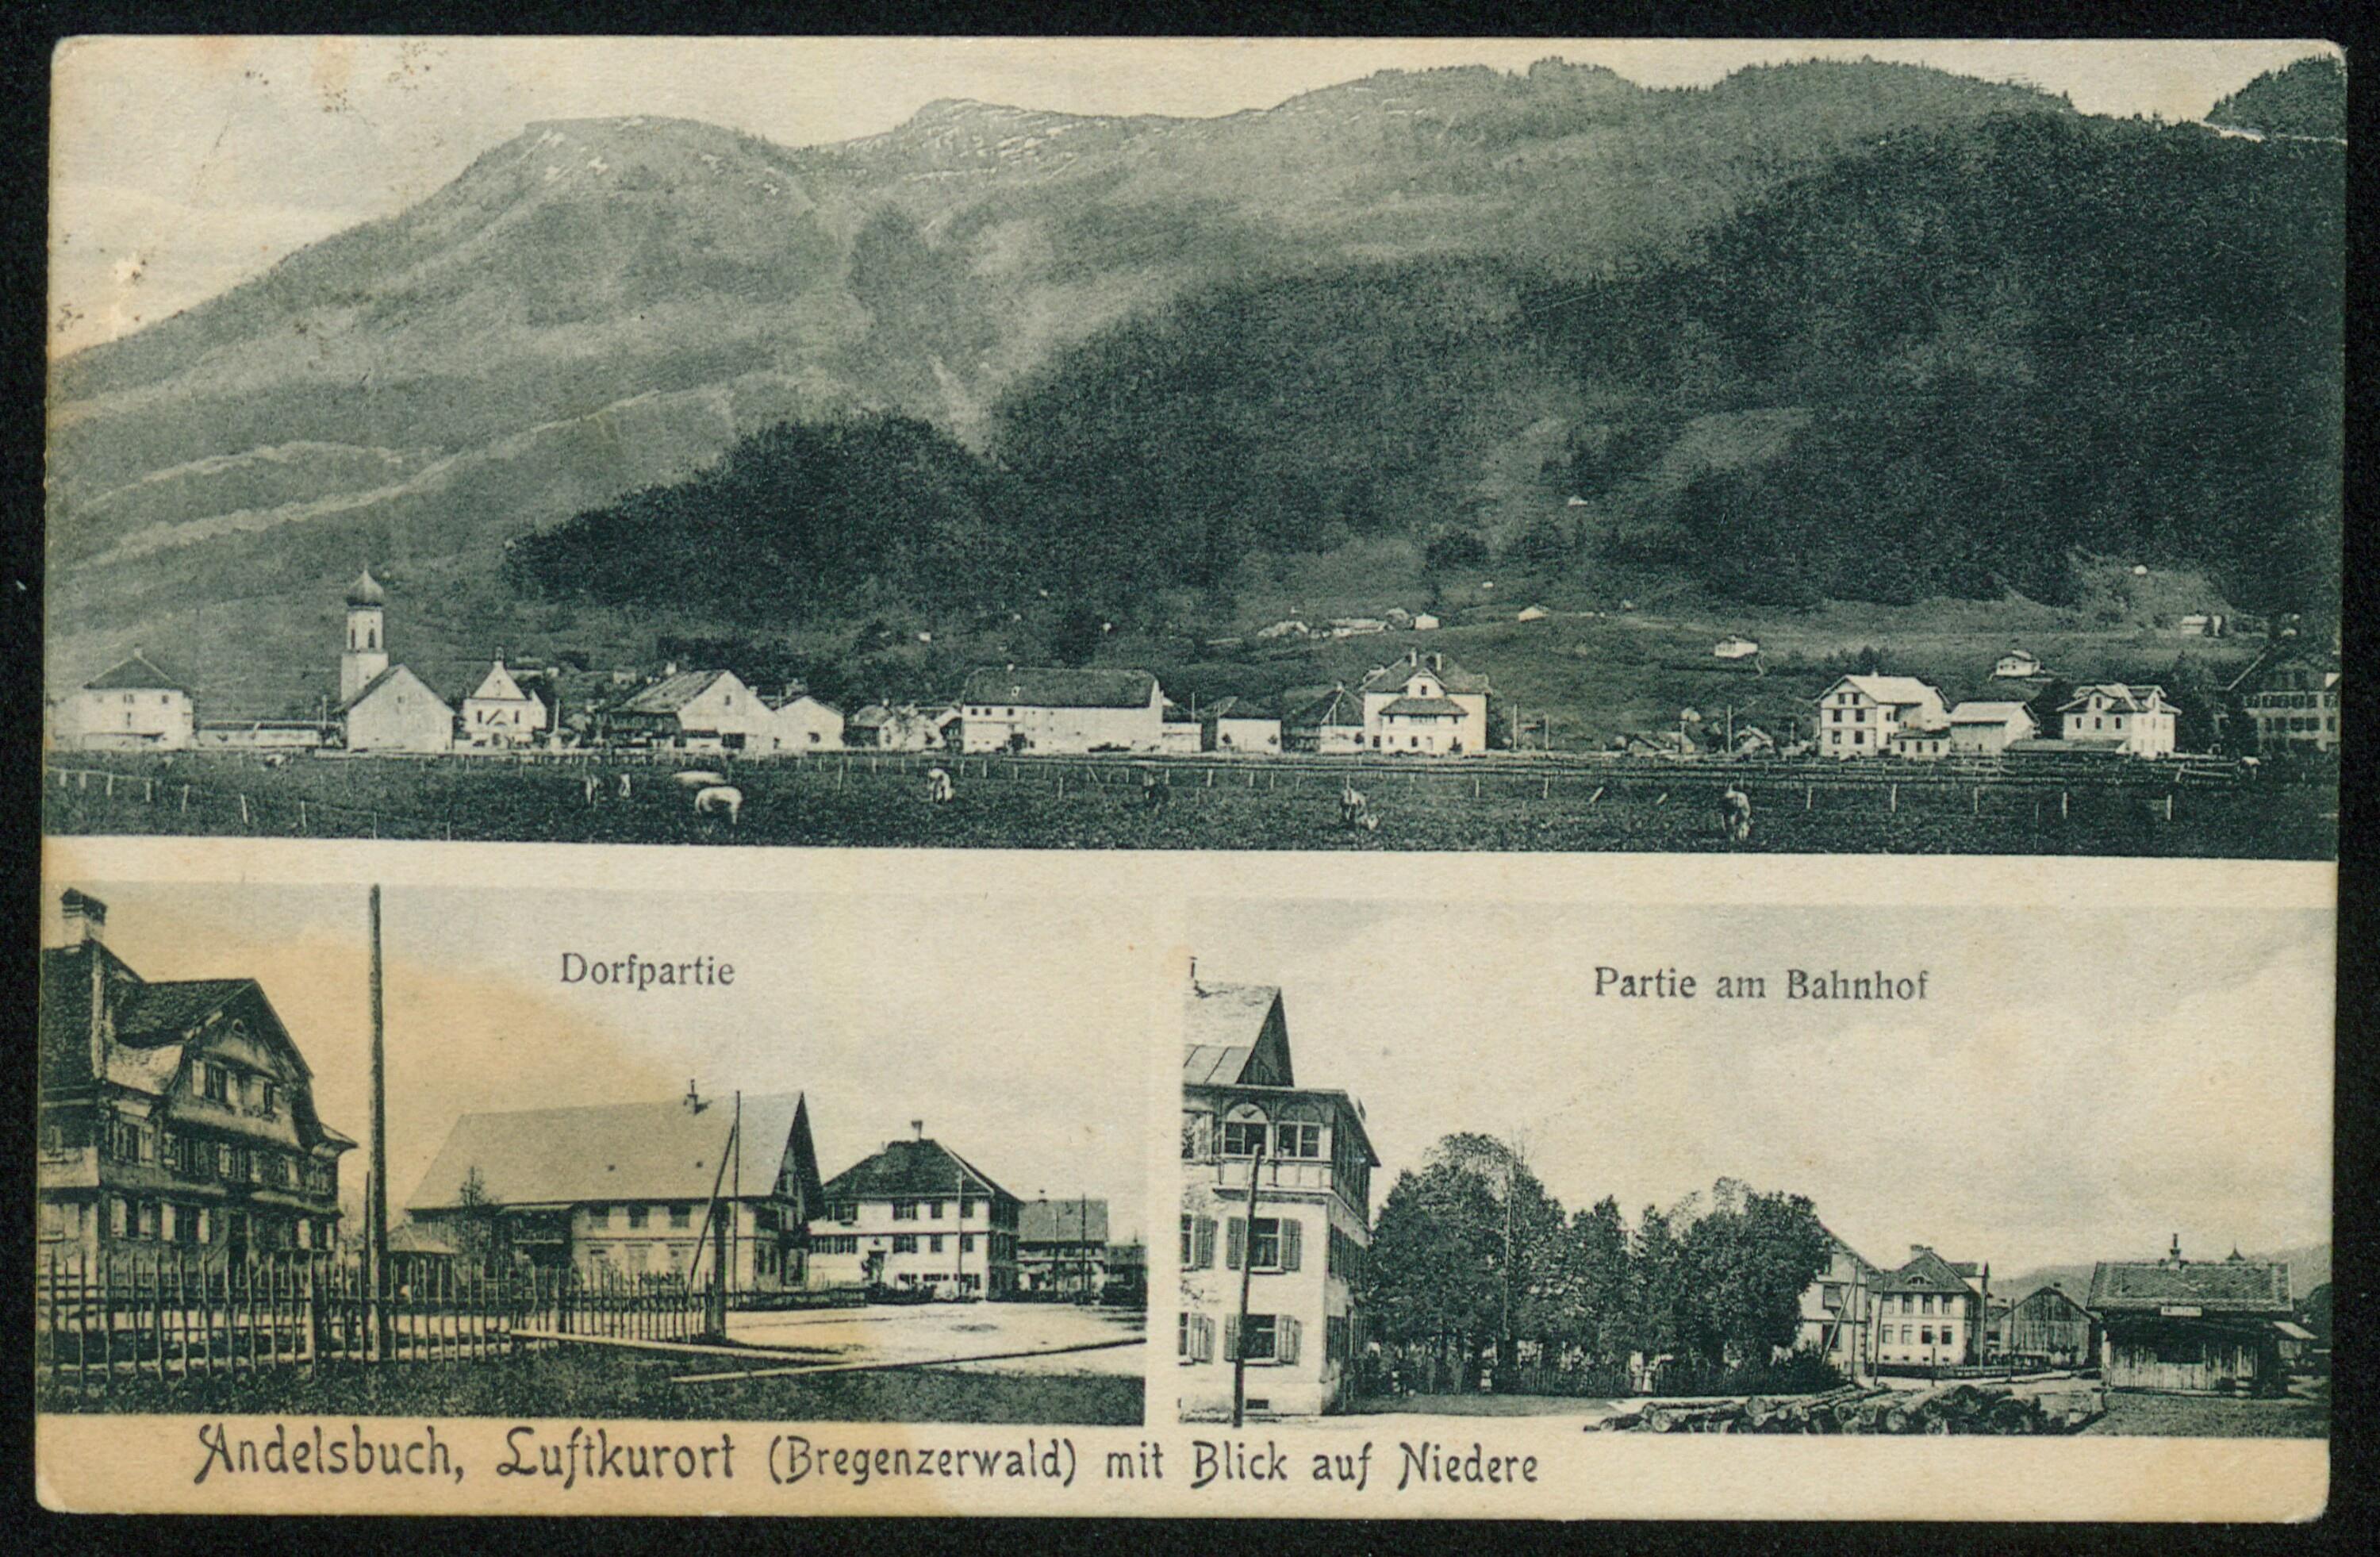 Andelsbuch, Luftkurort (Bregenzerwald) mit Blick auf Niedere></div>


    <hr>
    <div class=